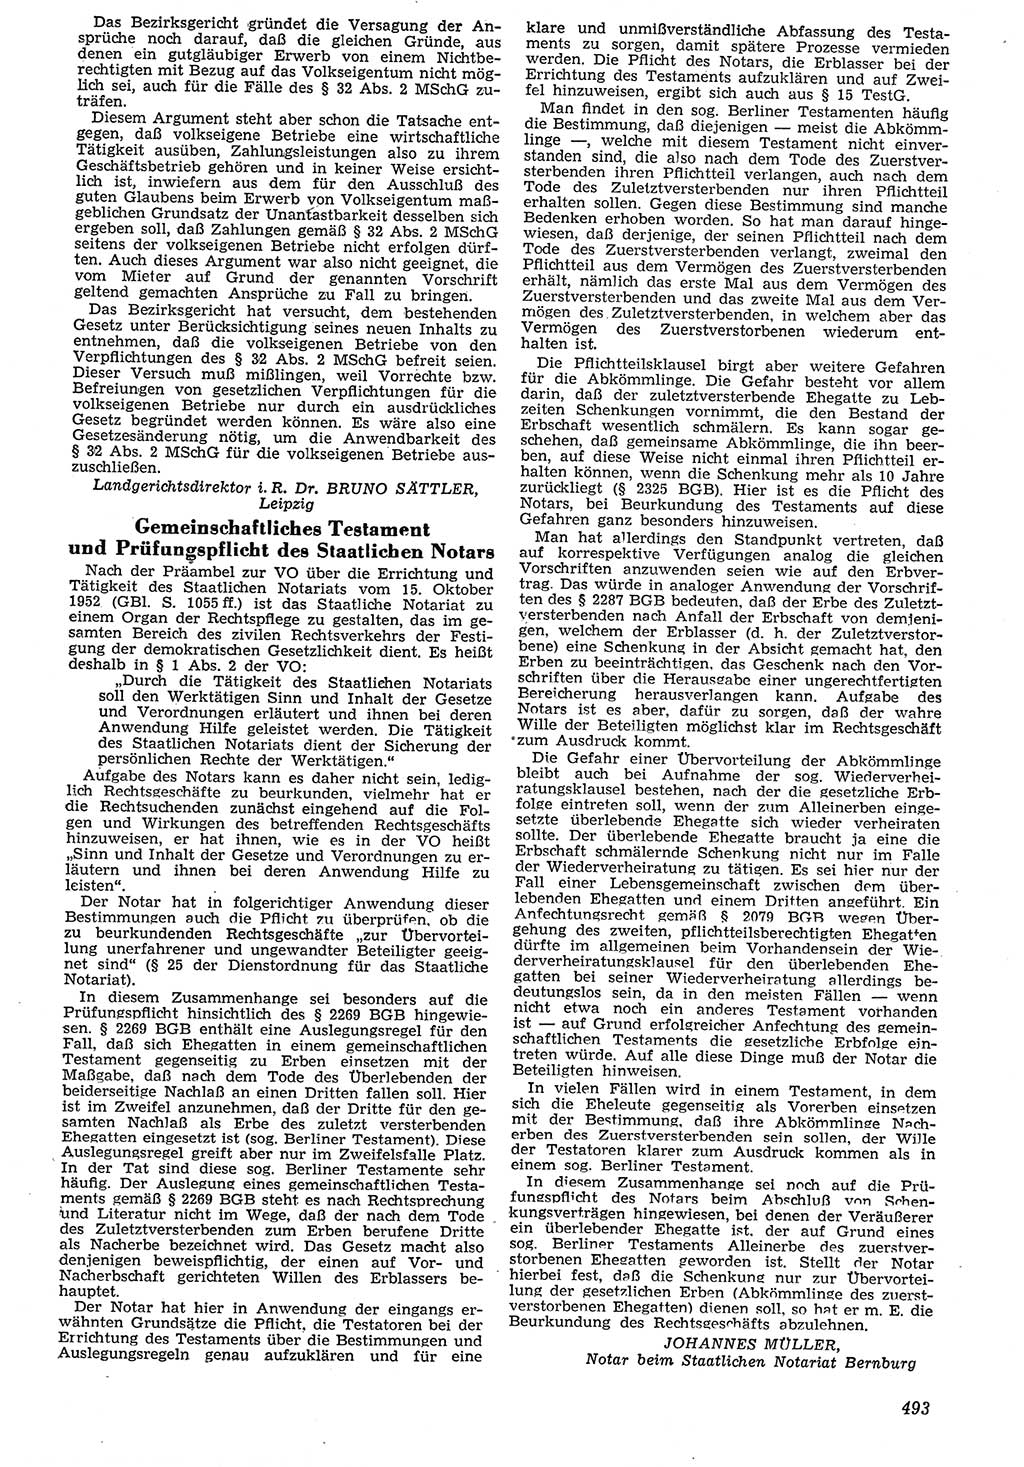 Neue Justiz (NJ), Zeitschrift für Recht und Rechtswissenschaft [Deutsche Demokratische Republik (DDR)], 7. Jahrgang 1953, Seite 493 (NJ DDR 1953, S. 493)